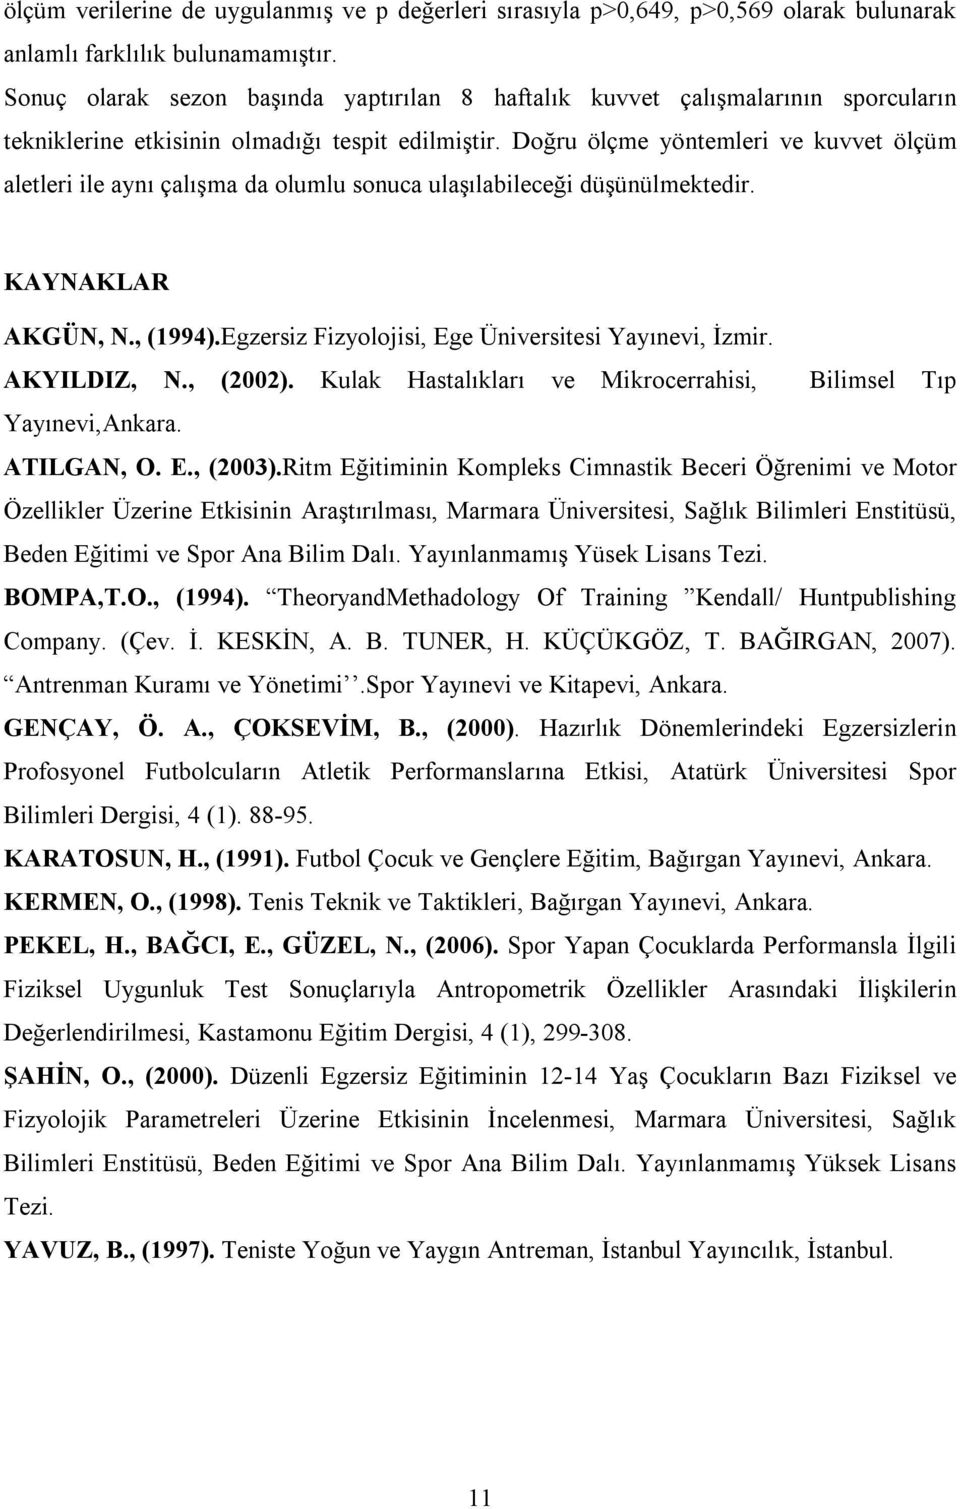 Doğru ölçme yöntemleri ve kuvvet ölçüm aletleri ile aynı çalışma da olumlu sonuca ulaşılabileceği düşünülmektedir. KAYNAKLAR AKGÜN, N., (1994).Egzersiz Fizyolojisi, Ege Üniversitesi Yayınevi, İzmir.